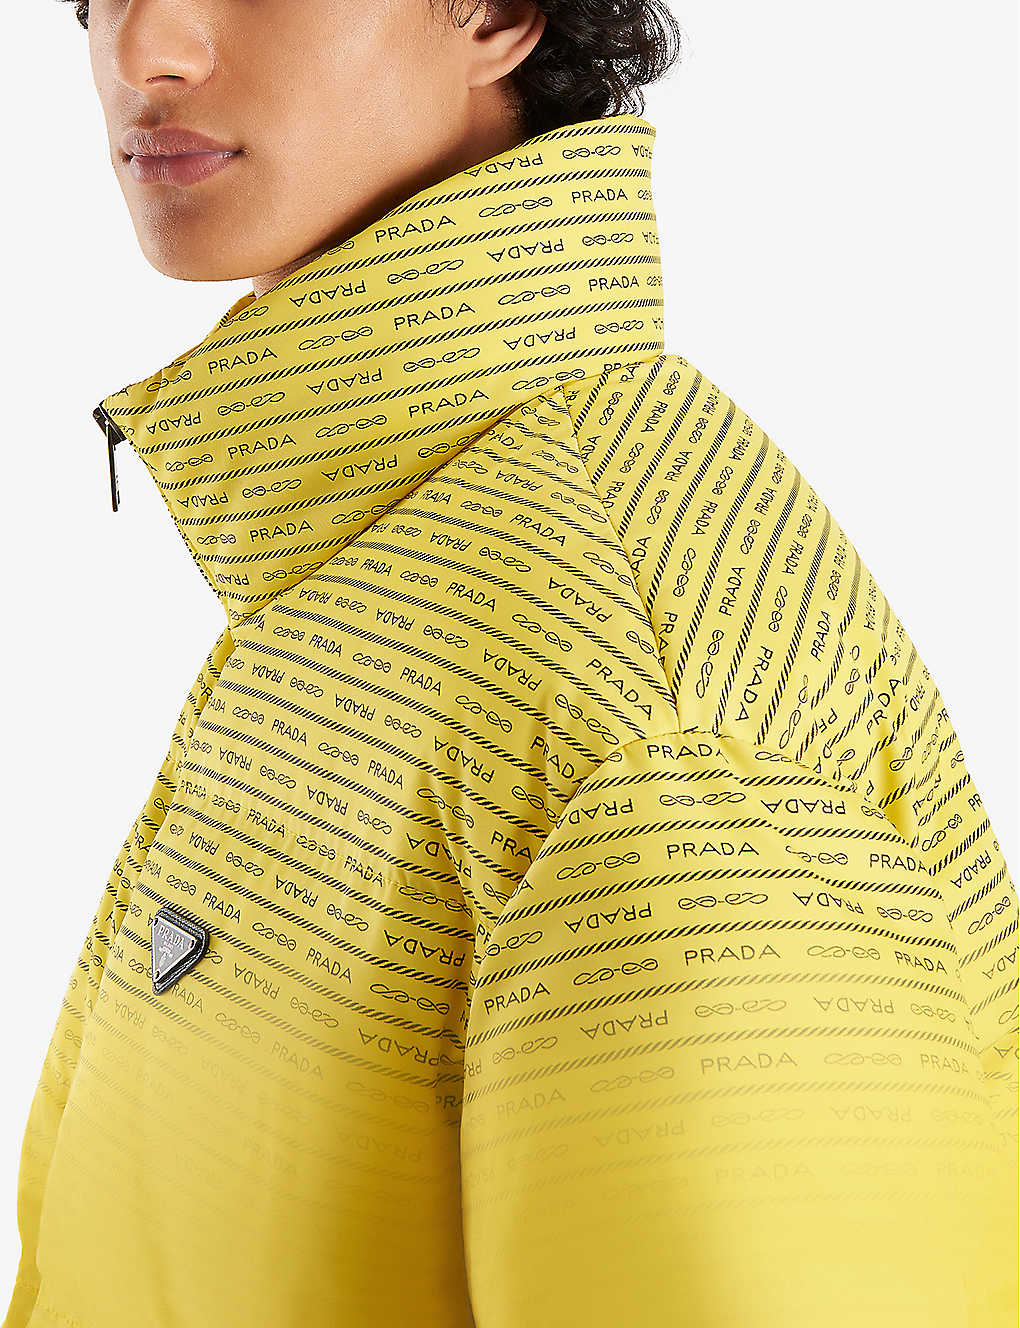 Modelo usando jaqueta puffer amarela da Prada que revela estampa em baixas temperaturas